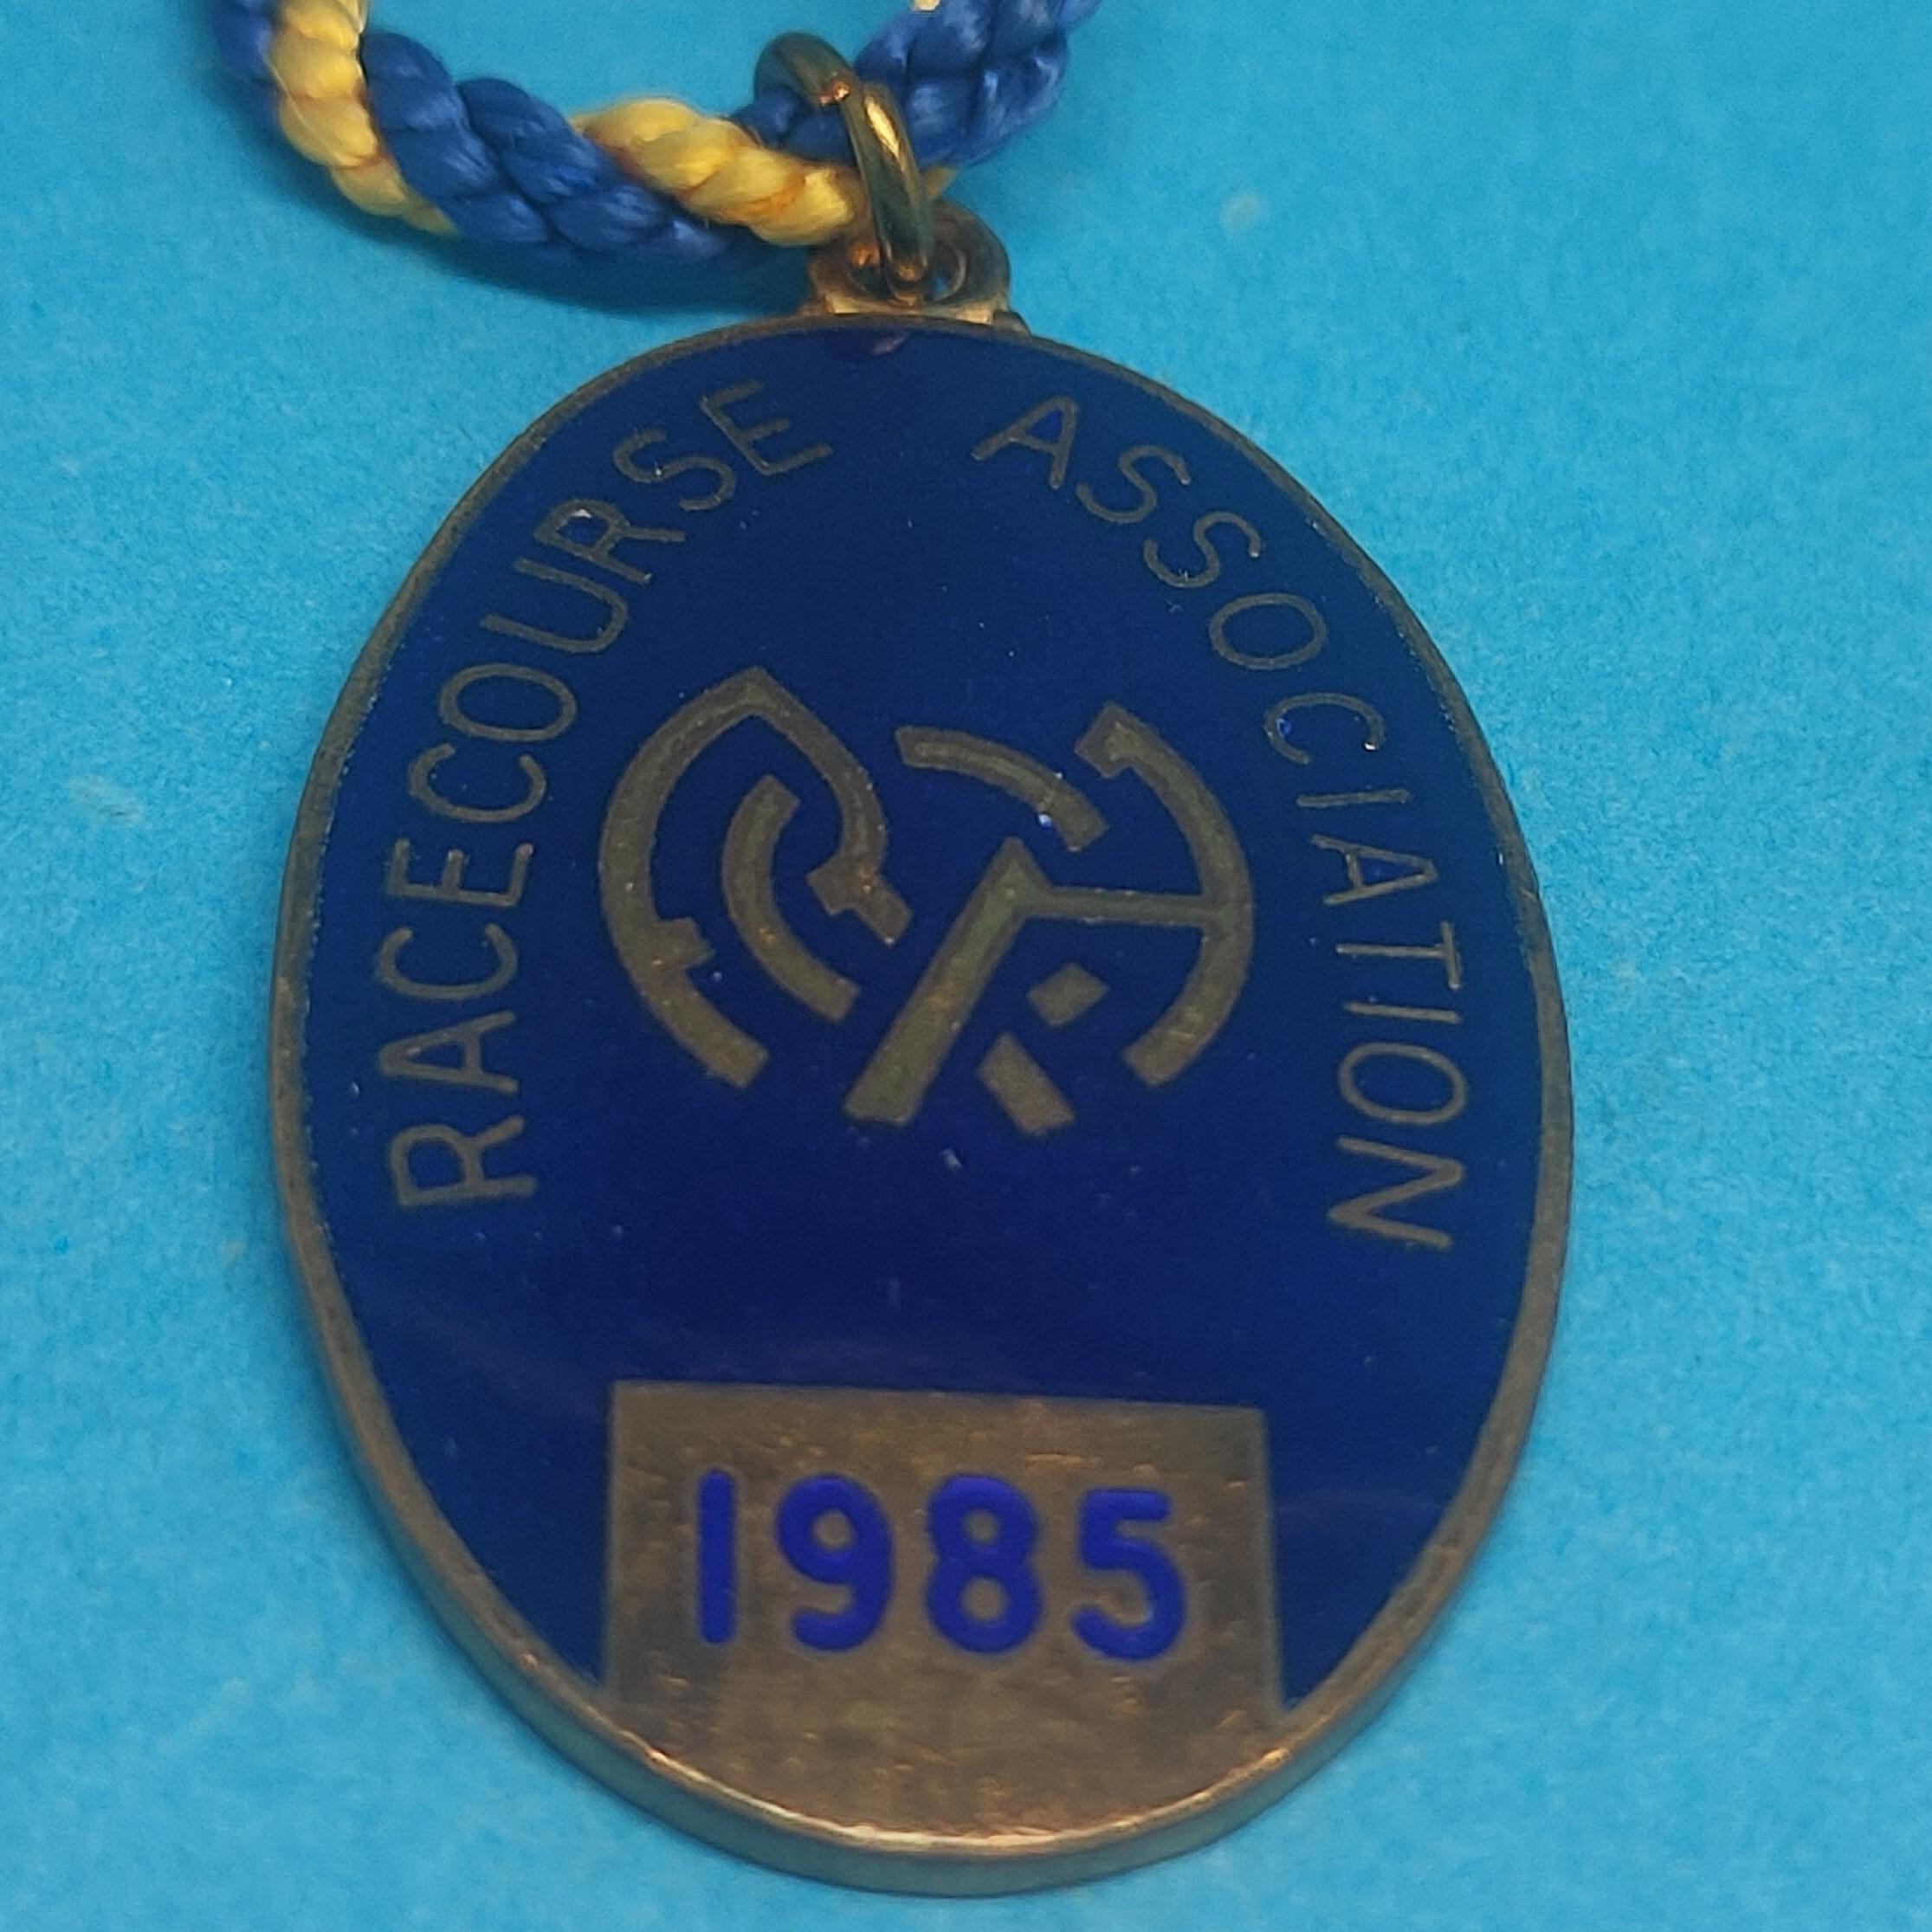 Racecourse Association 1985